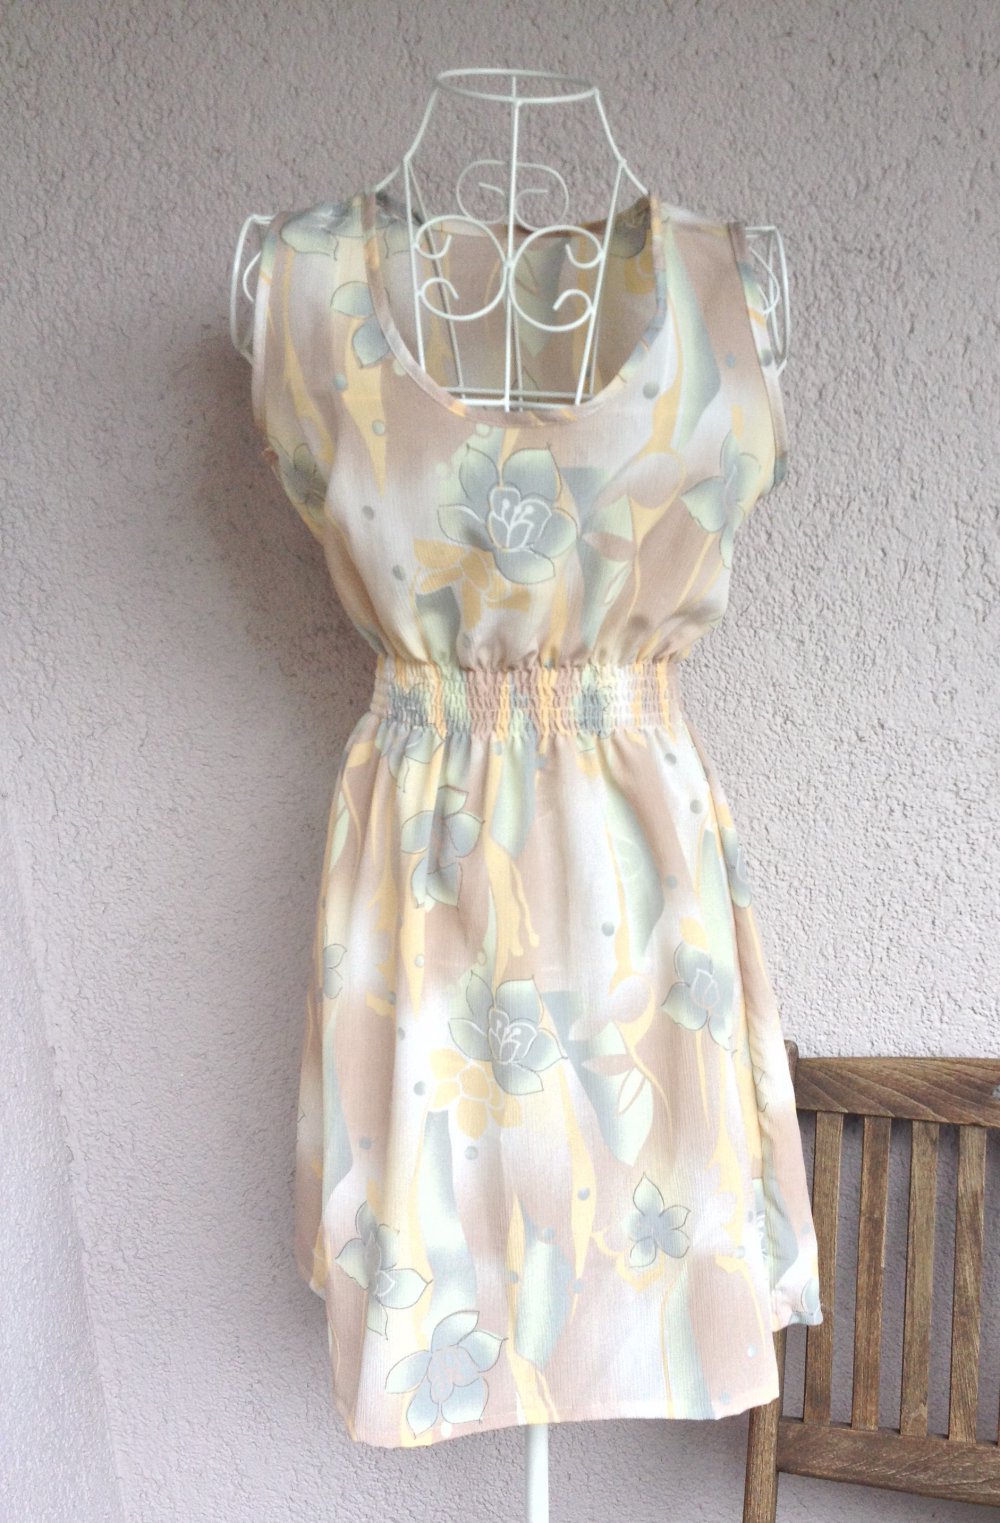 Wunderschönes Vintage Kleid mit tollem Muster in Pastellfarben